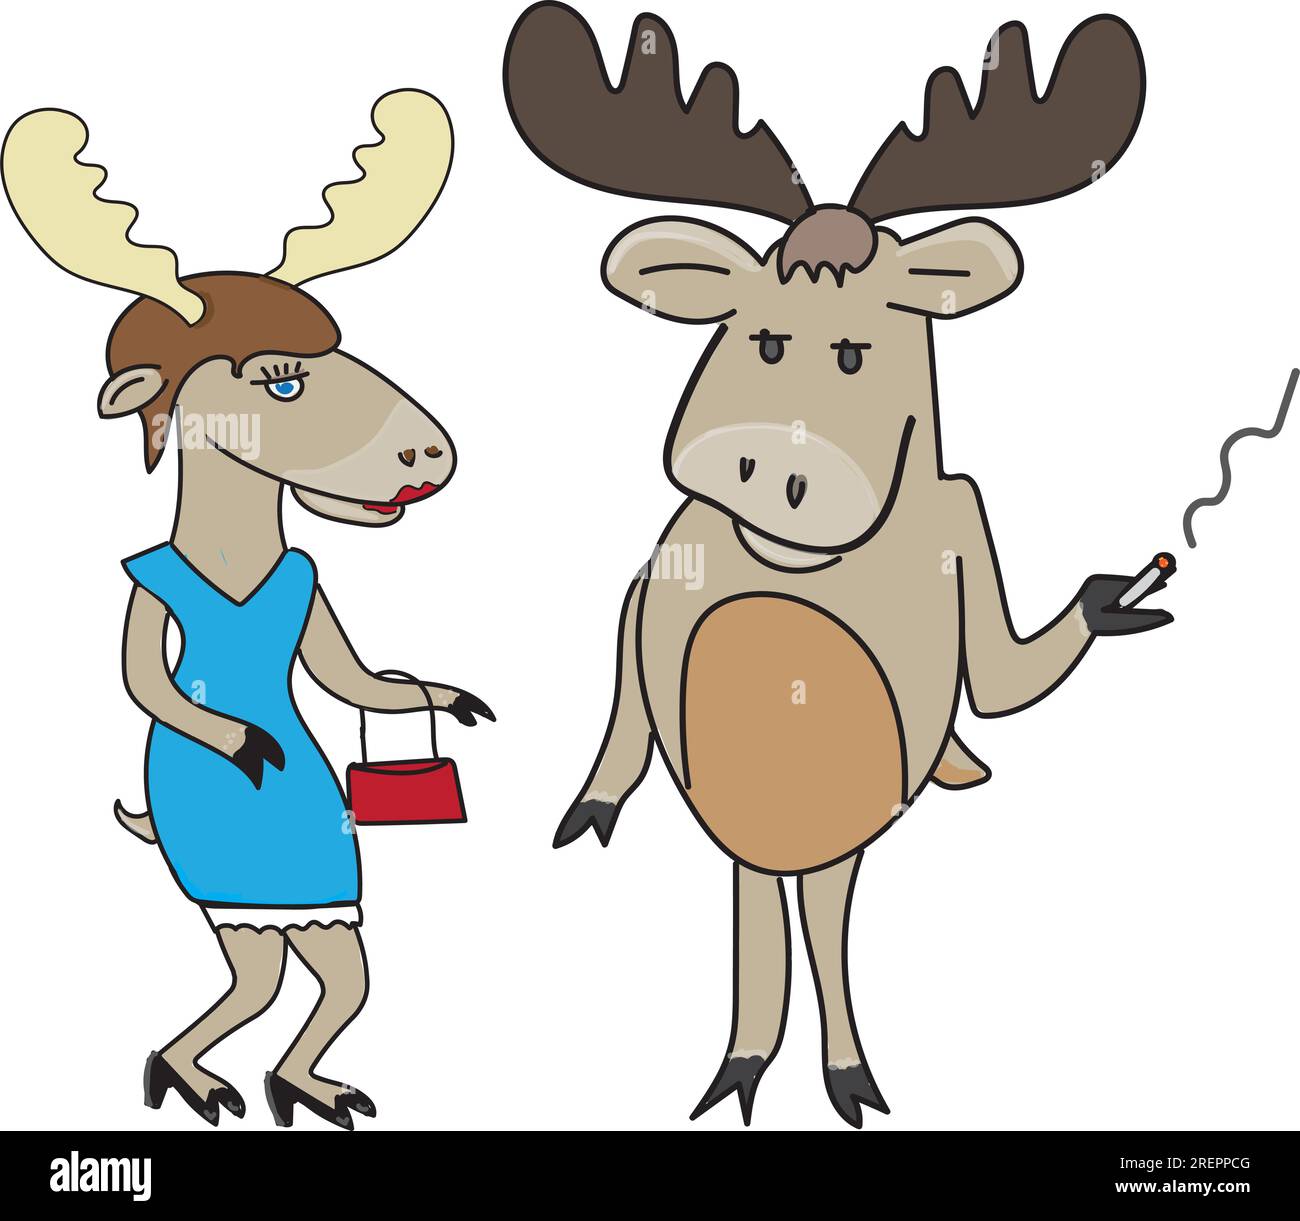 Zwei anthropomorphe Elche, Rentier-Illustration, rauchendes Tier Stock Vektor